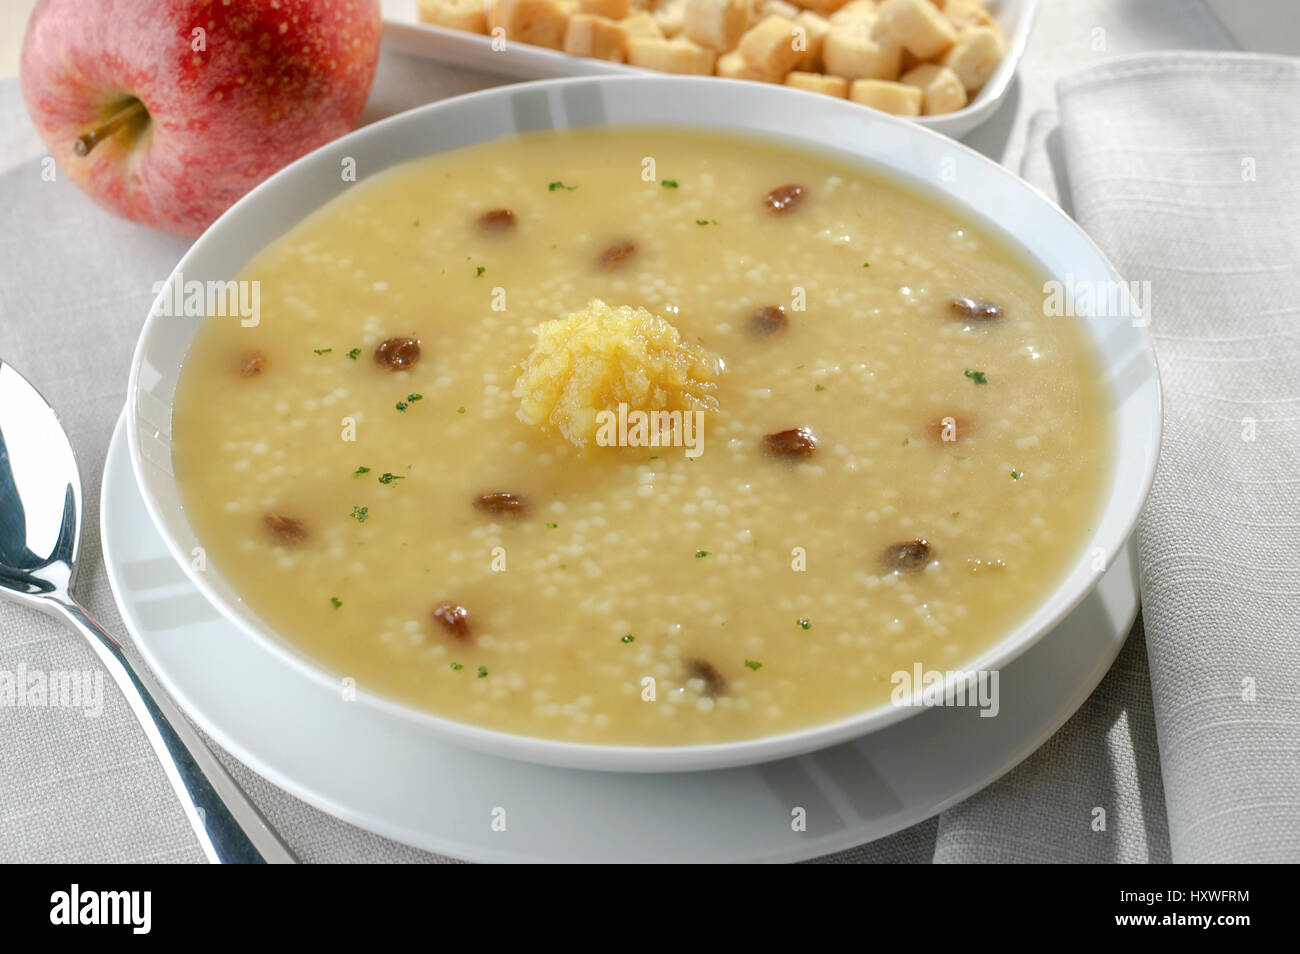 en plato redondo sopa de semola de trigo con tacos de jamon y pure de manzana Stock Photo